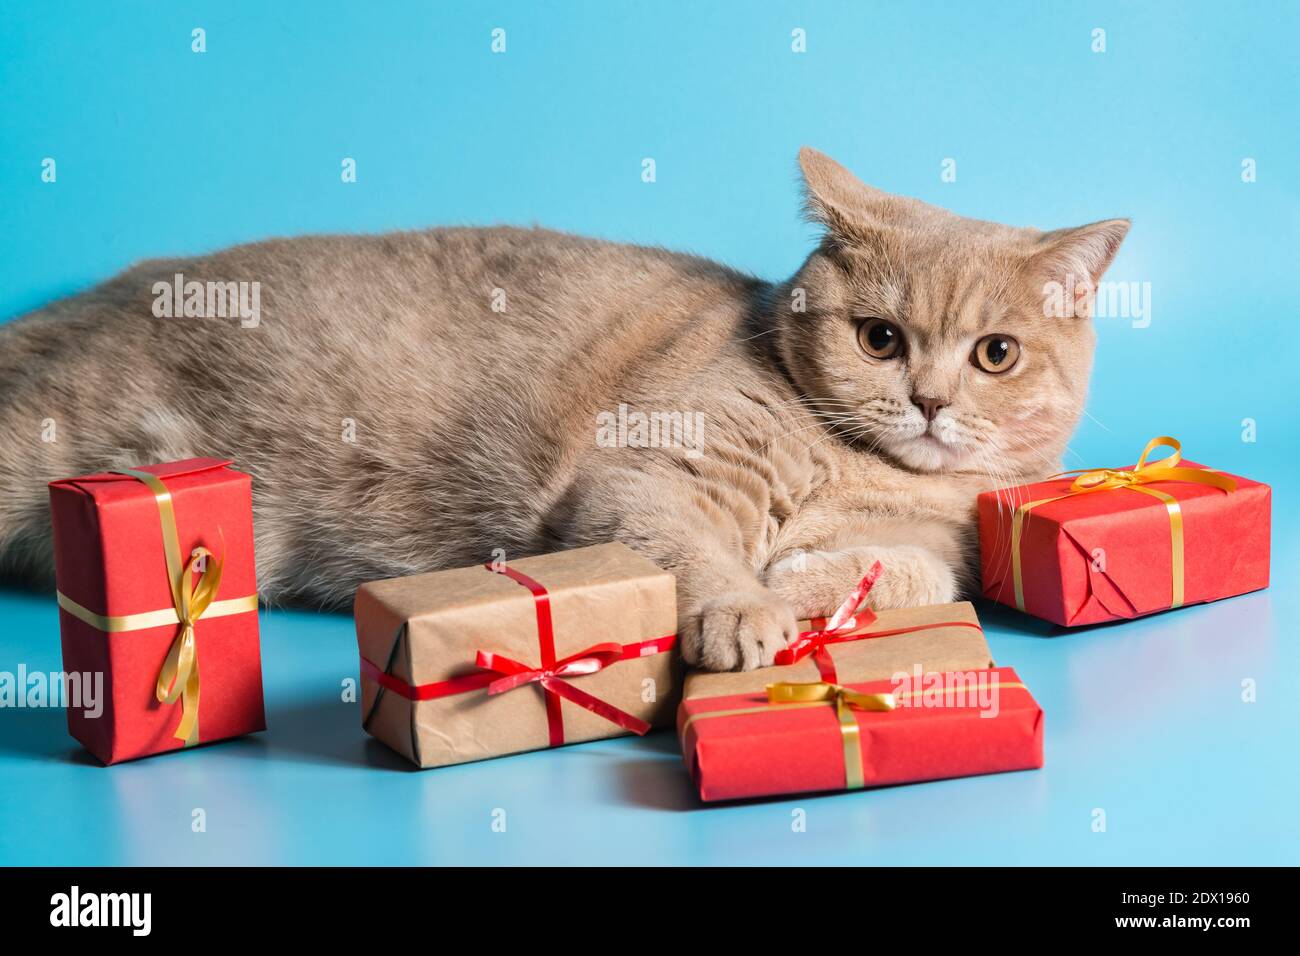 La couleur pêche Shorthair de race de chat sursurprise se trouve avec des cadeaux emballés dans du papier sur un fond bleu. Un aperçu de la caméra. Gros plan Banque D'Images